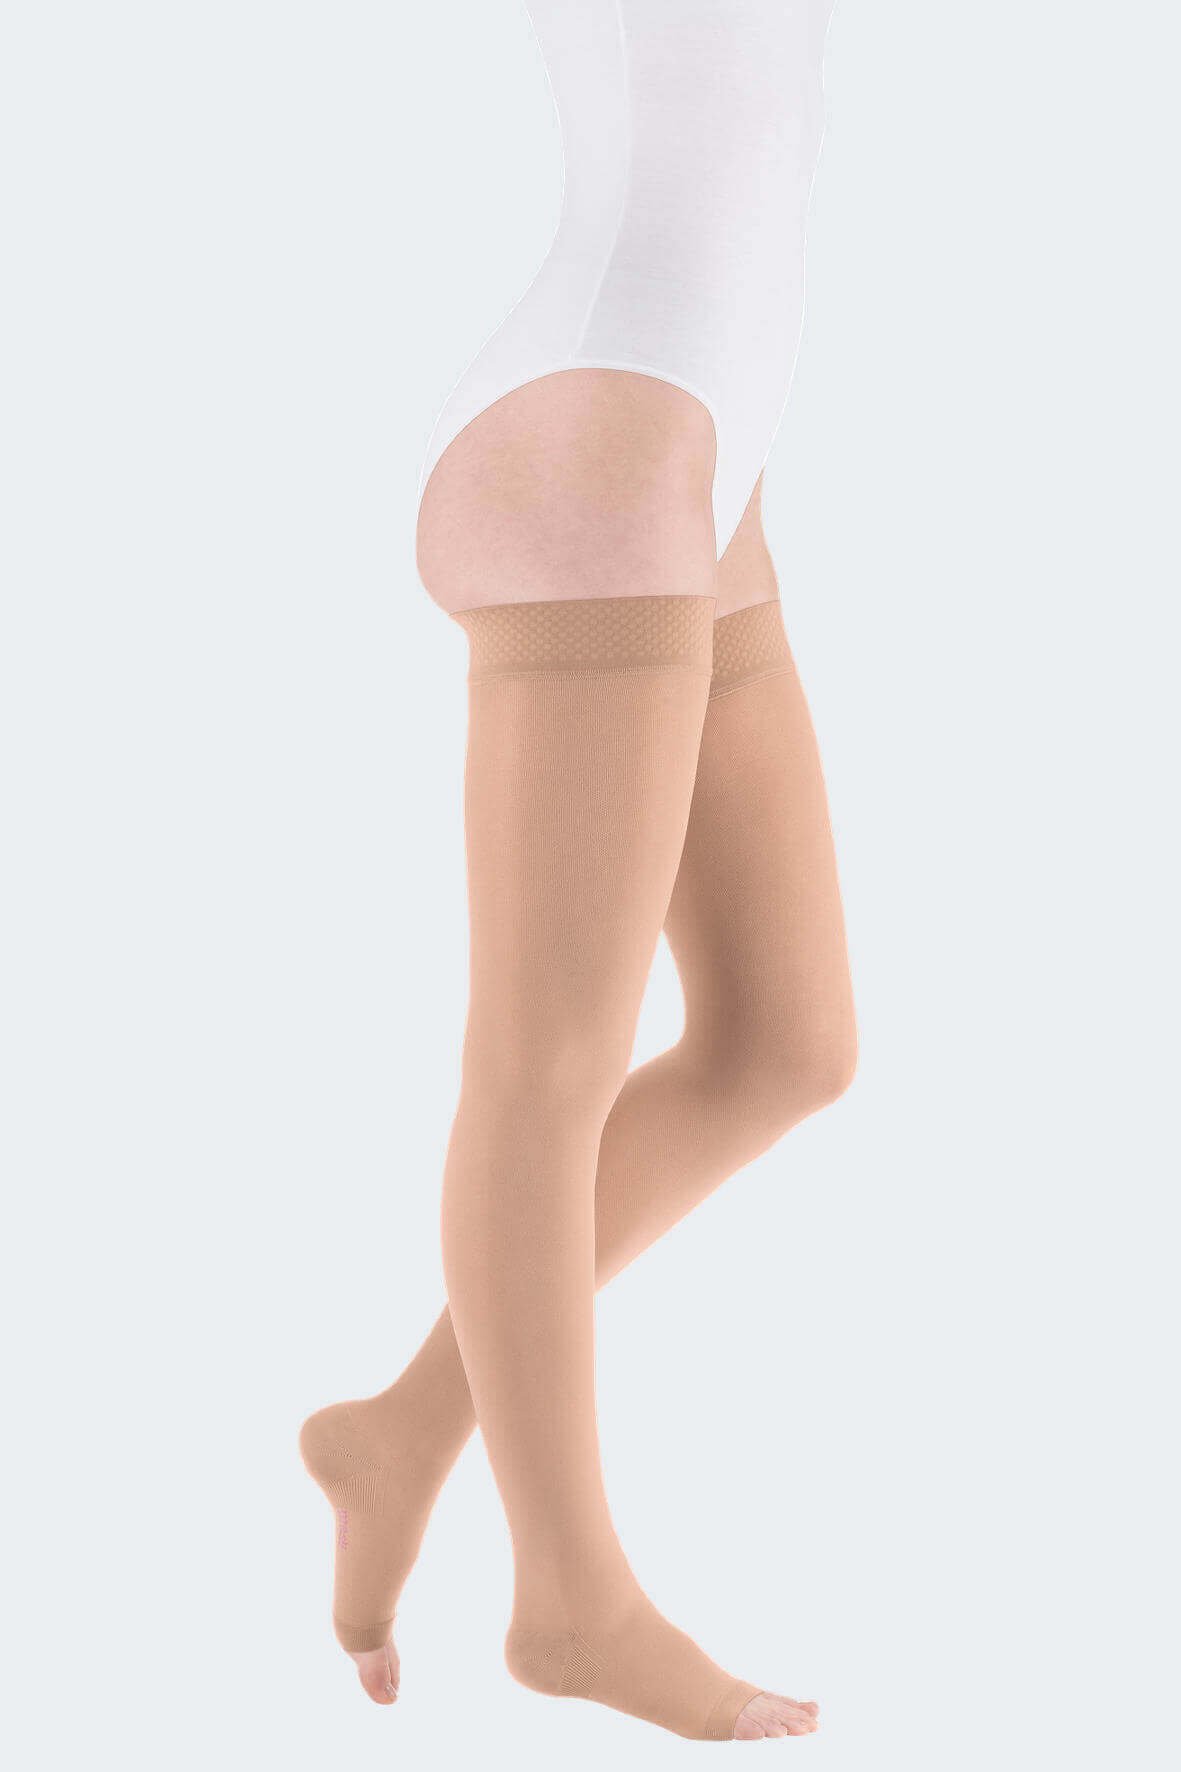 Панчохи компресійні на широке стегно Medi (Німеччина) mediven comfort (1 клас компресії) карамель, короткі, відкритий носок, розмір 1